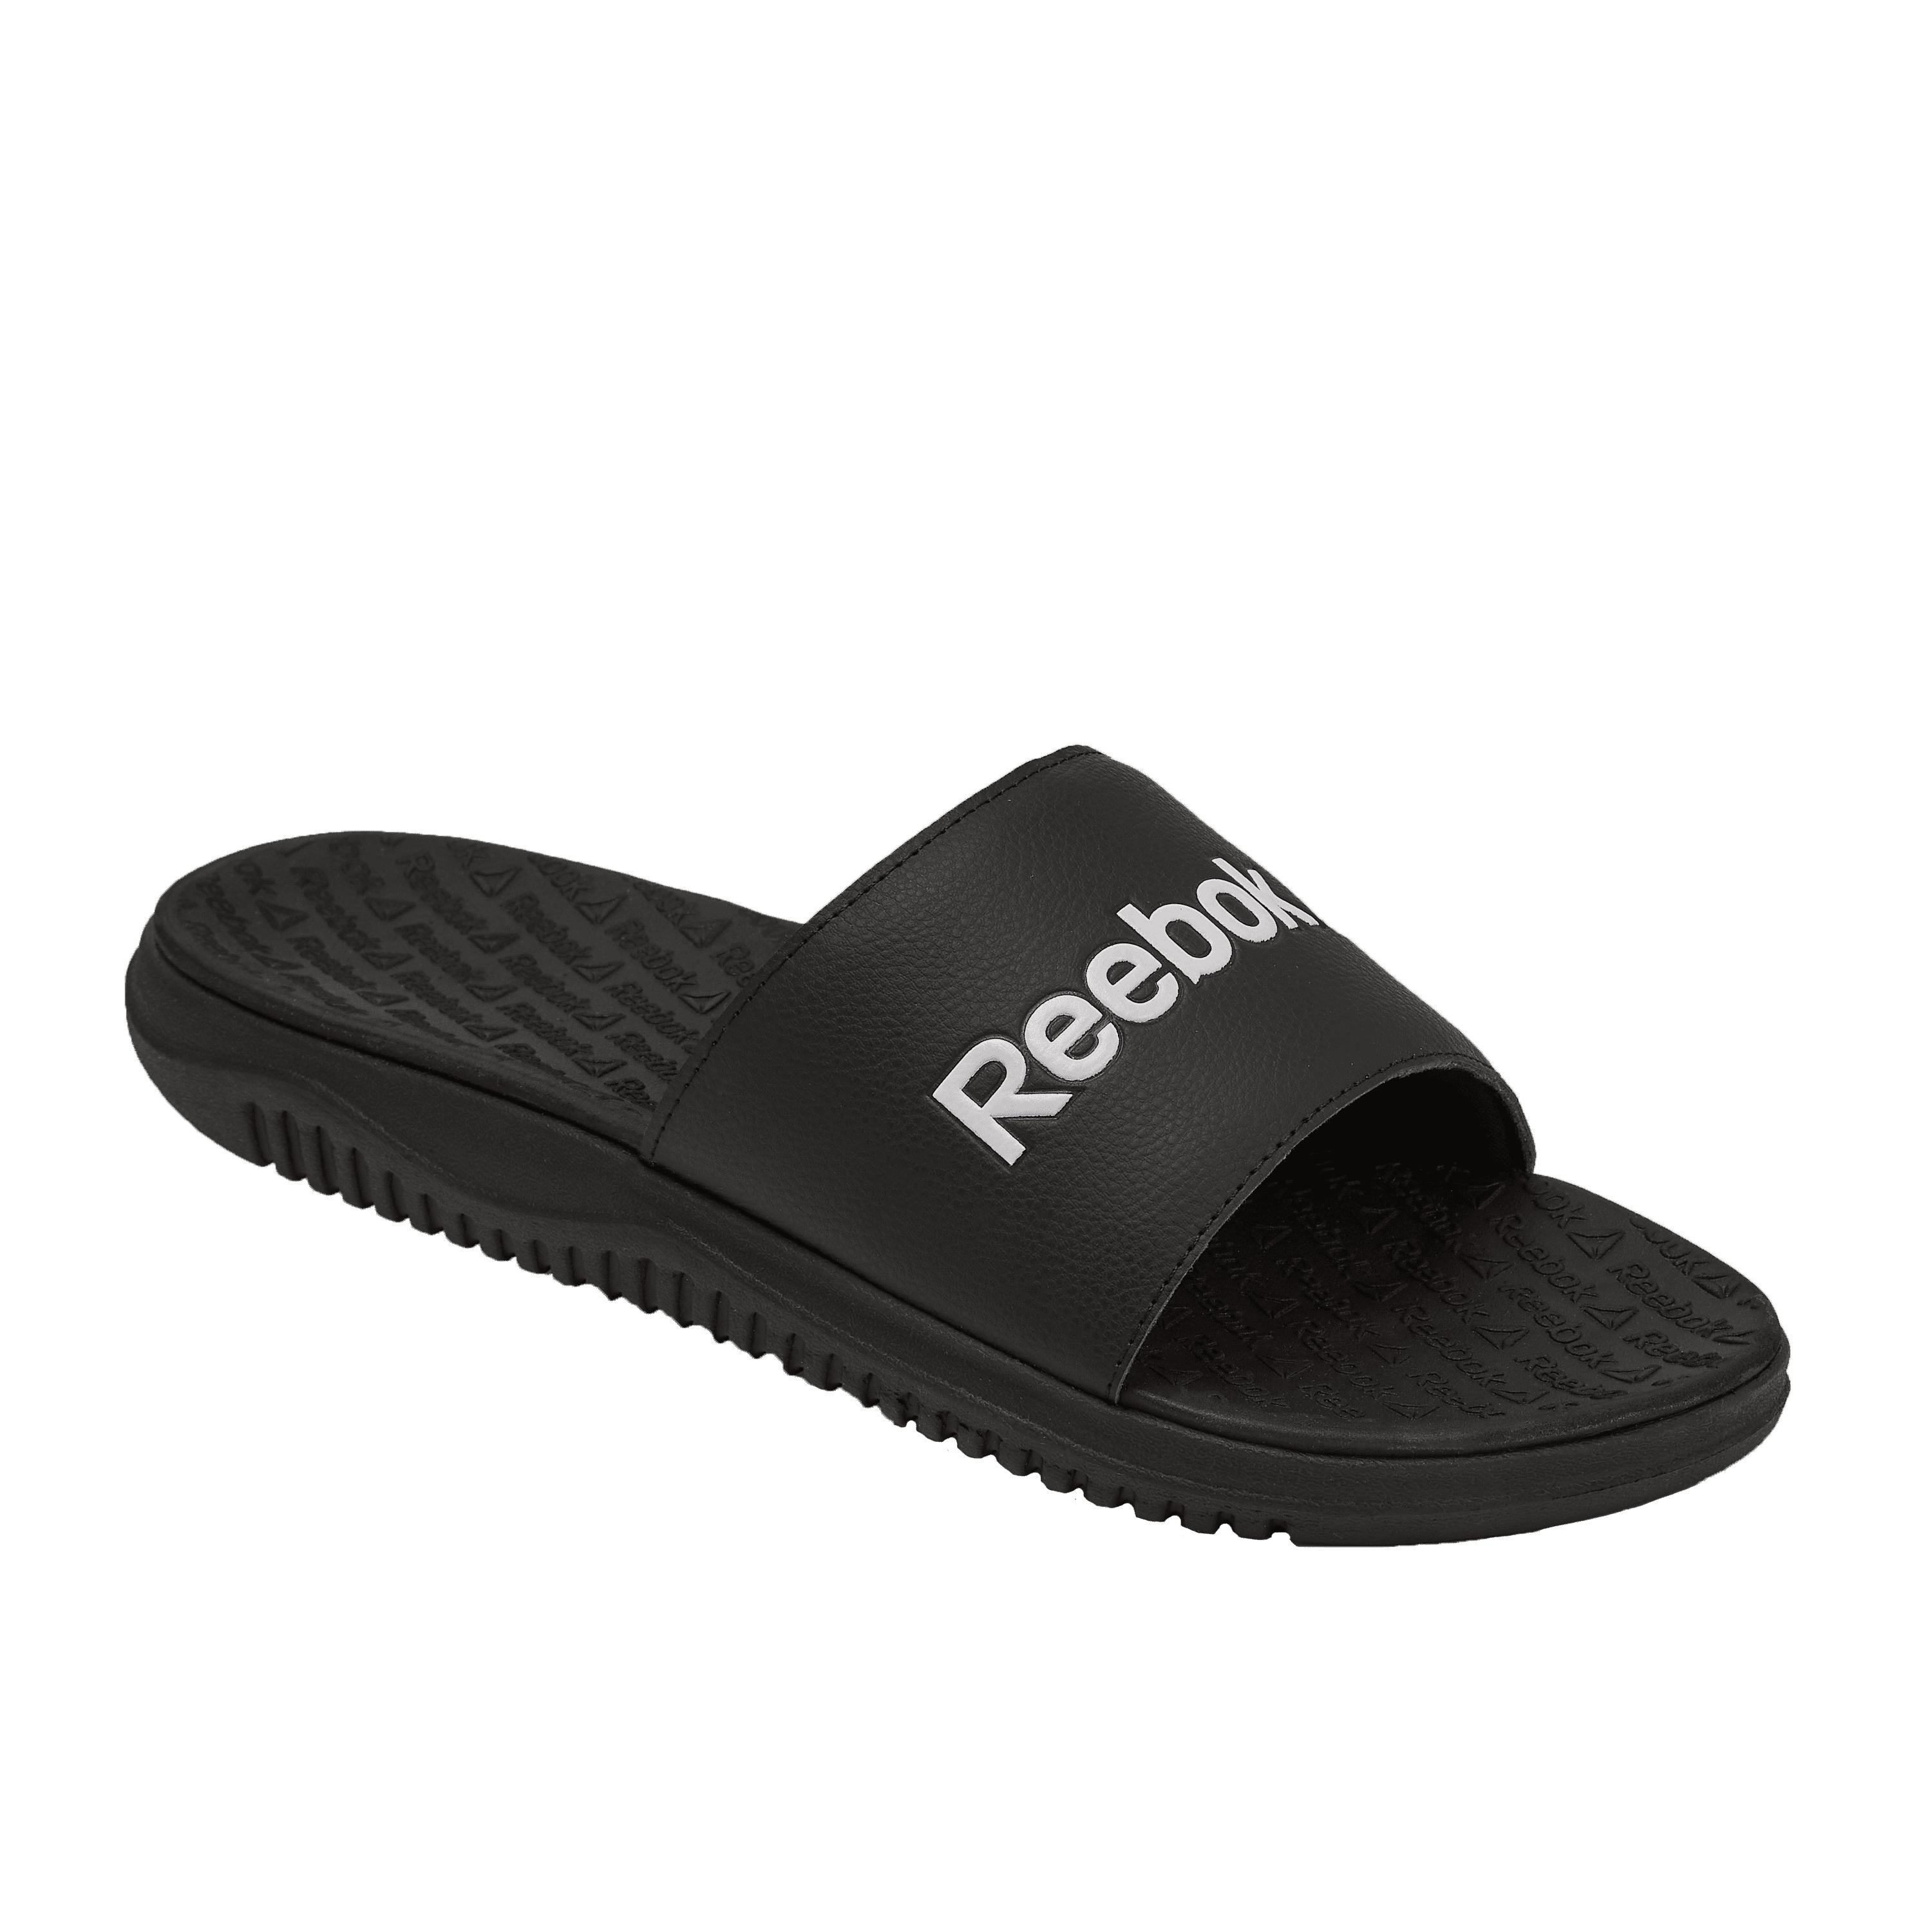 Reebok Men's Dual Density Comfort Slide Sandals - Walmart.com